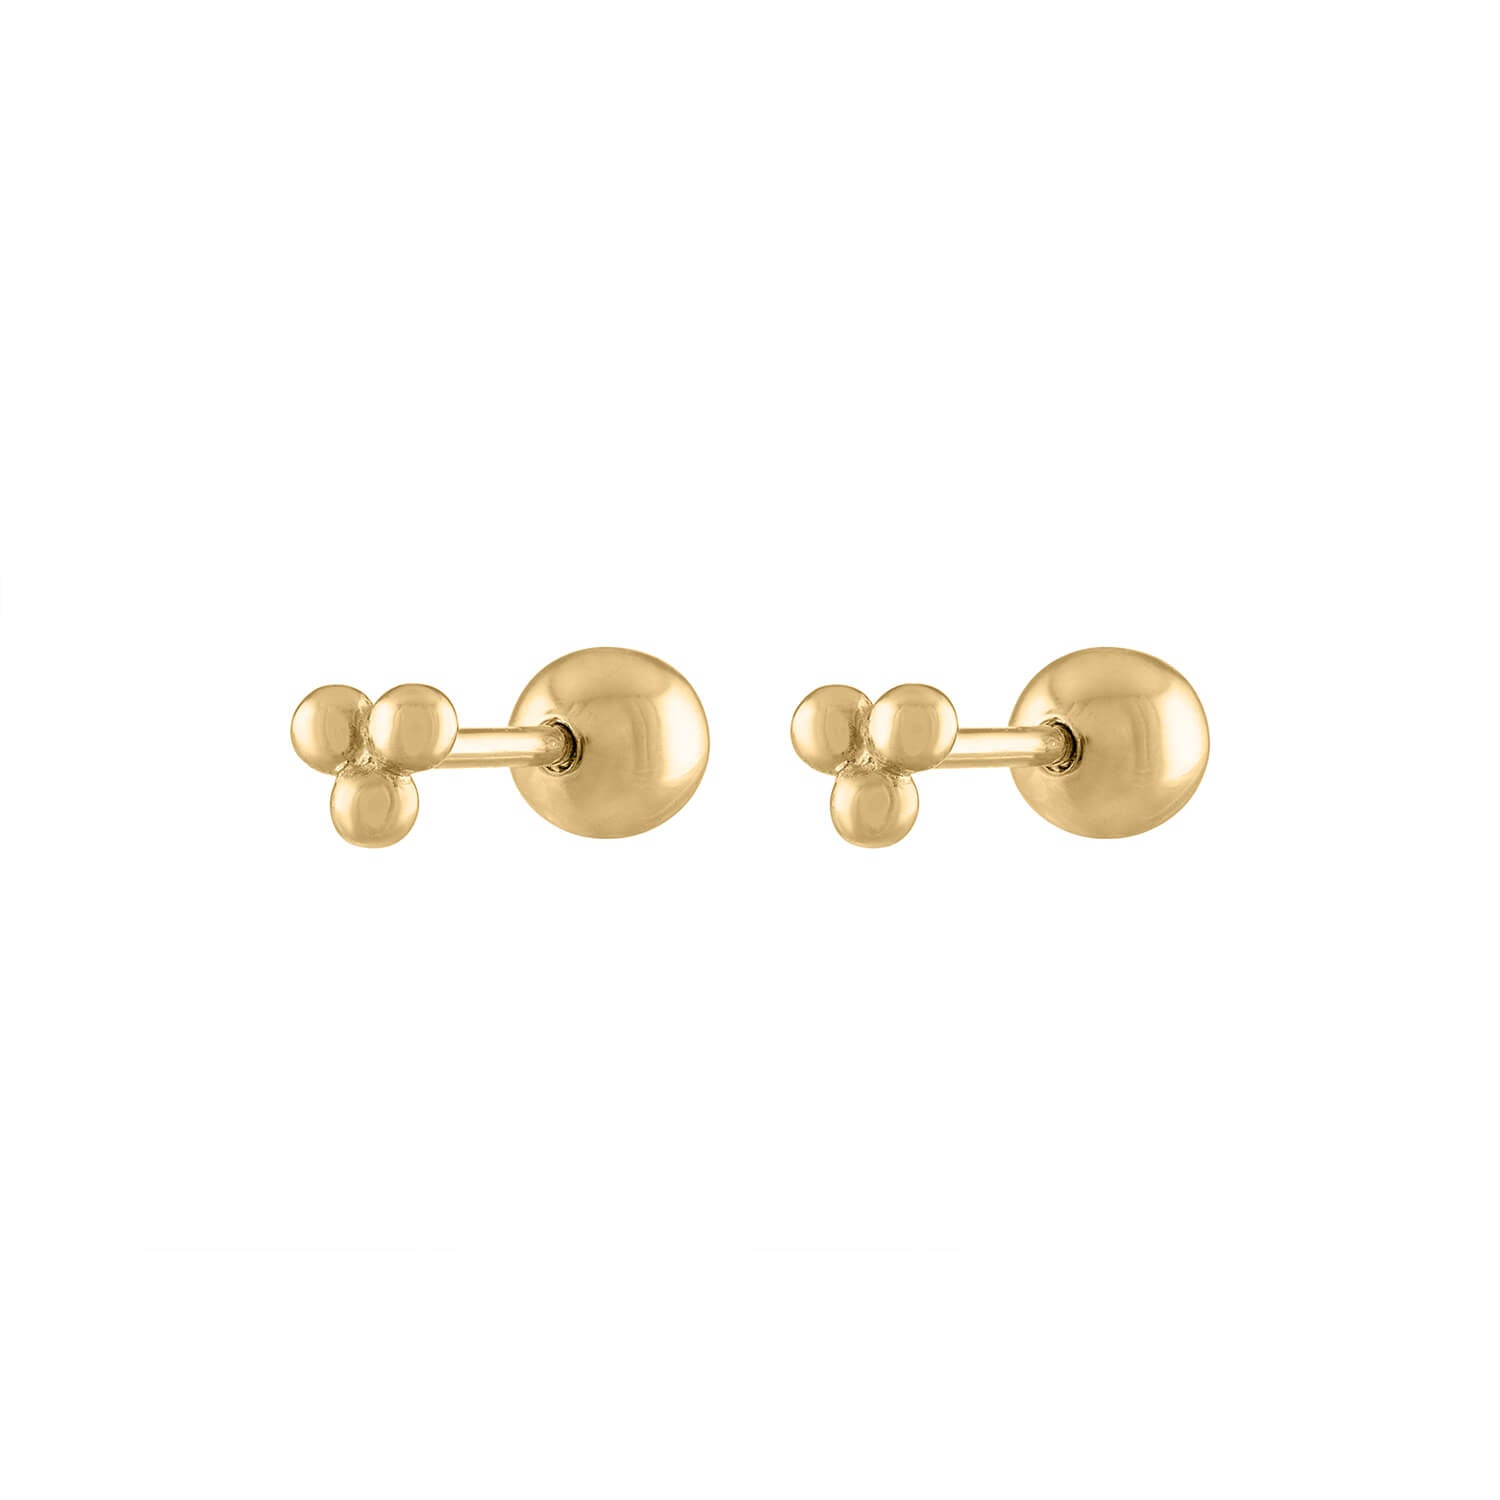 https://www.maisonmiru.com/cdn/shop/products/tiny-trinity-ball-back-earring-14k-gold-pair_1500x.jpg?v=1623267445